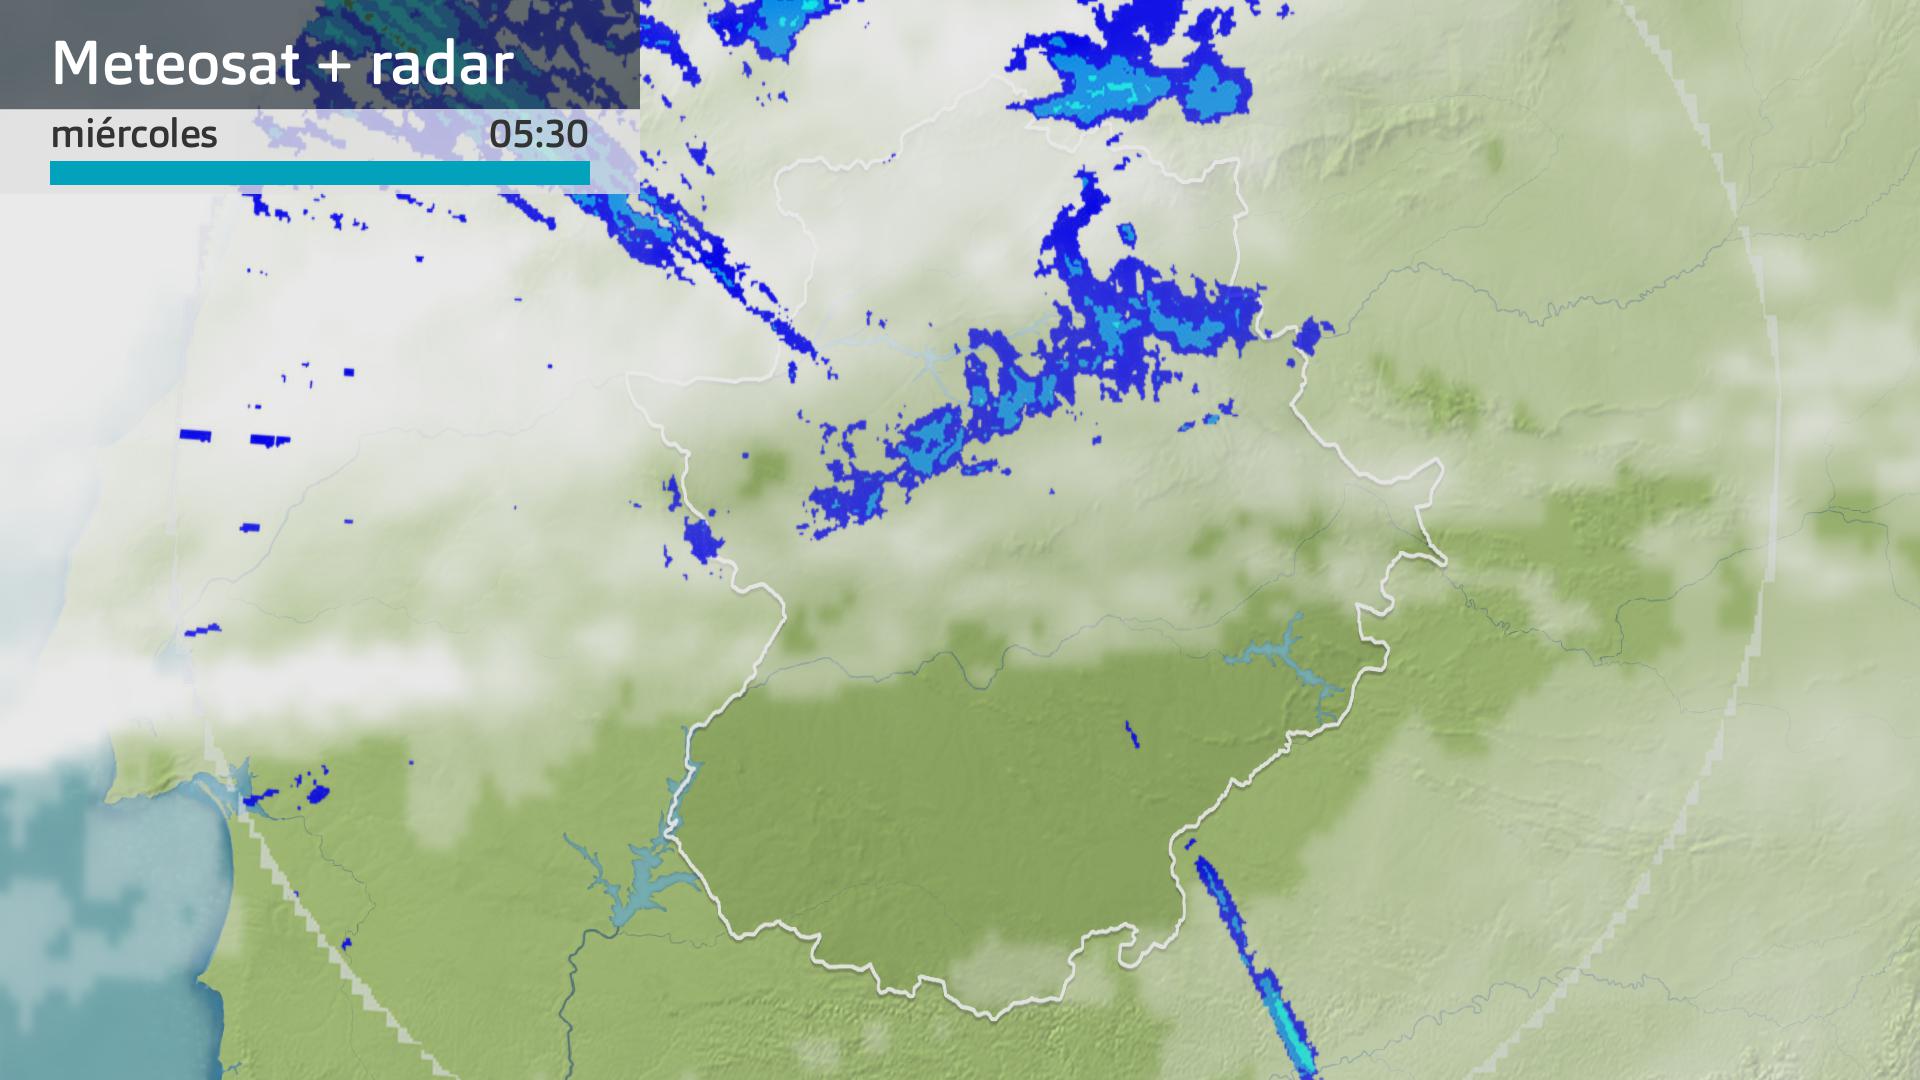 Imagen del Meteosat + radar meteorológico miércoles 3 de enero 5:30 h.